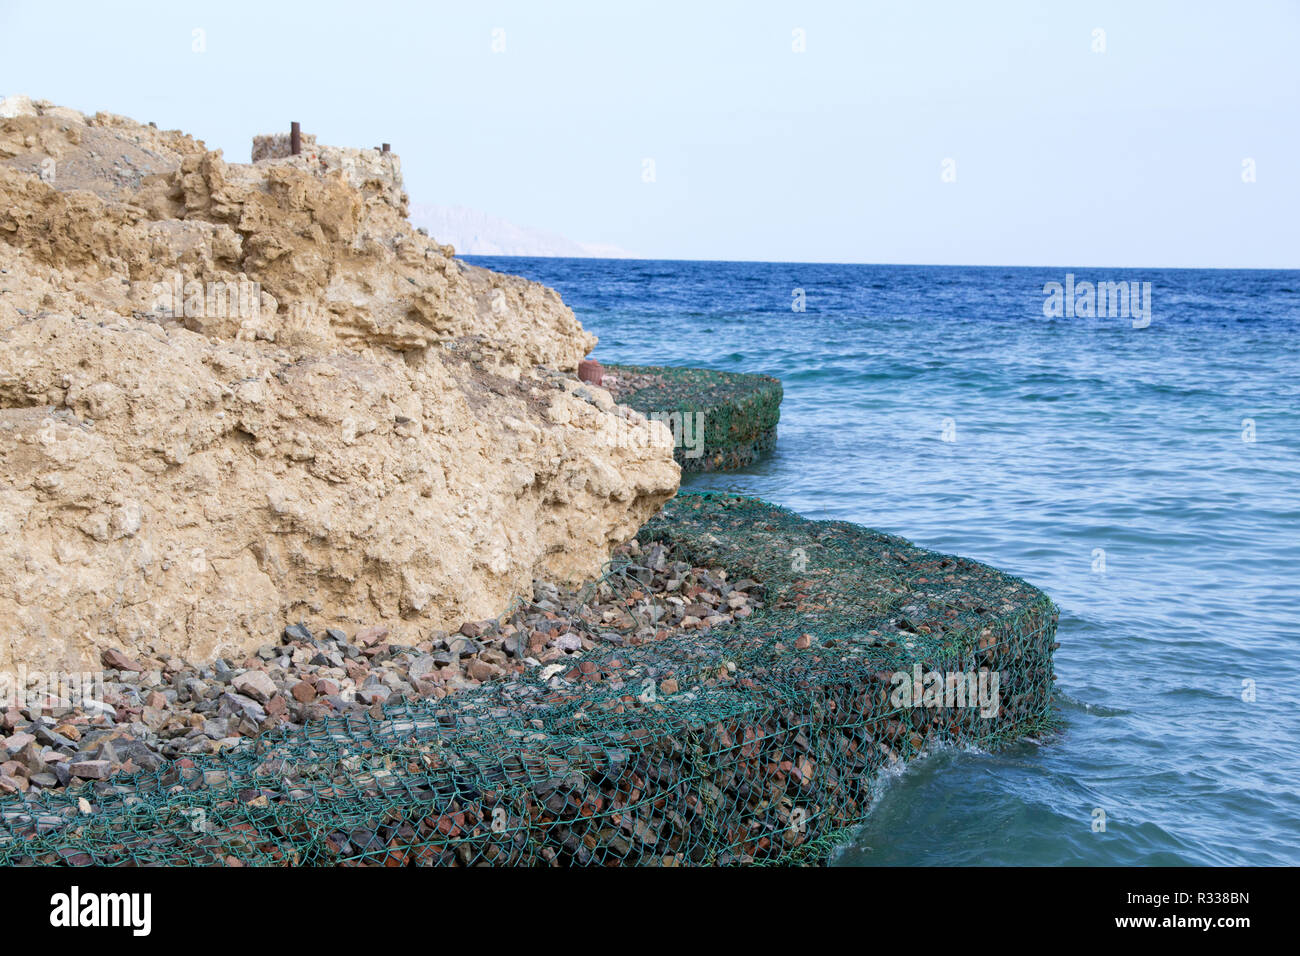 El-Shaikh Sharm, Ägypten - November 2, 2018: - Foto für die Küste des Roten Meeres in der ägyptischen Stadt Scharm el-Scheich, die Wasser zeigen und einige Felsen. Stockfoto